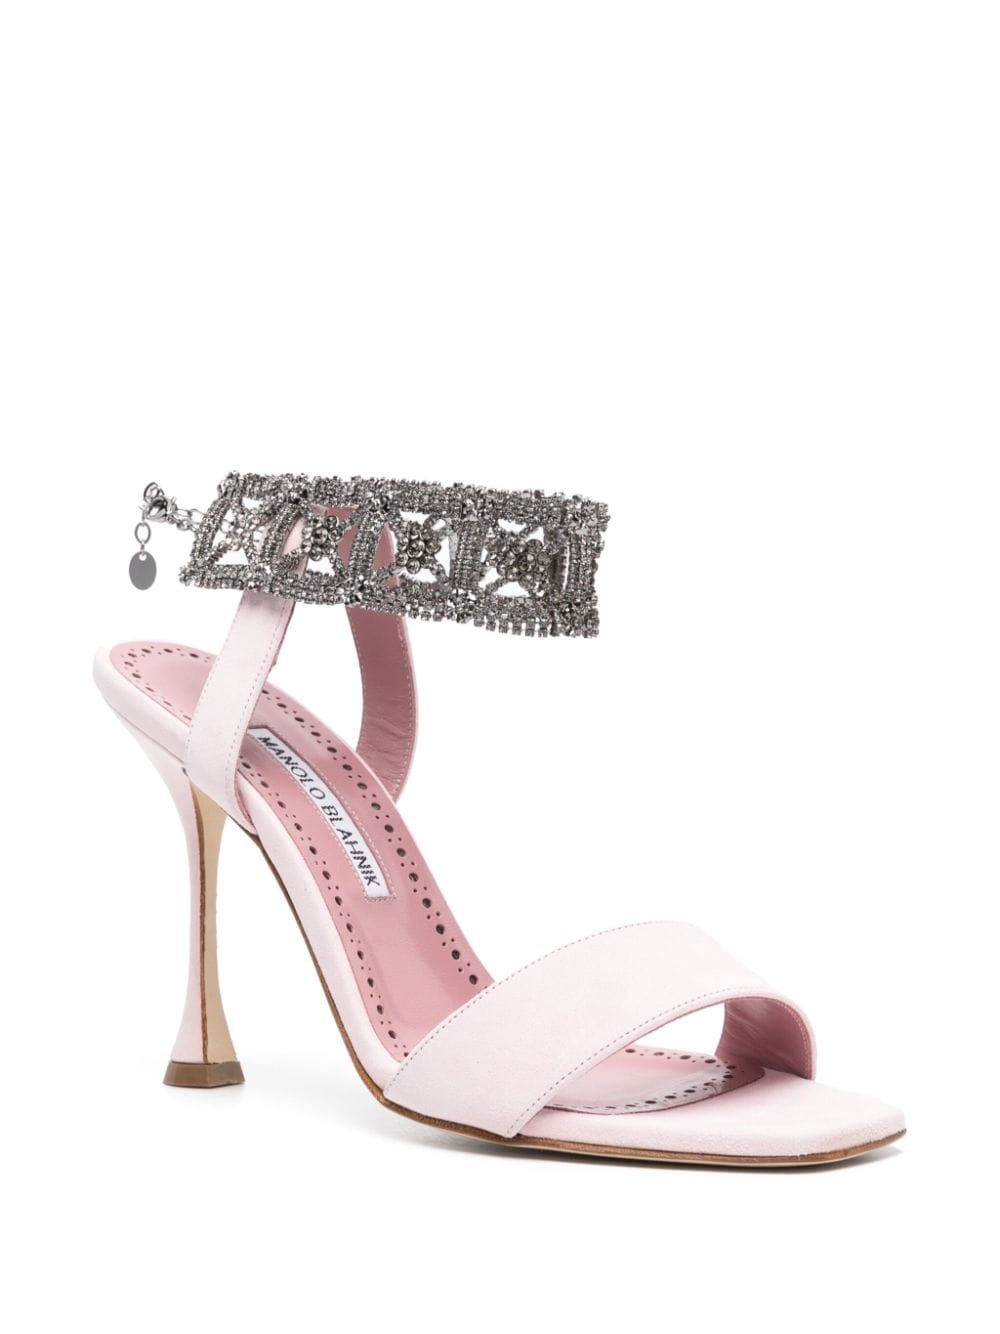 Shop Manolo Blahnik Lierasan 105mm Suede Sandals In Pink